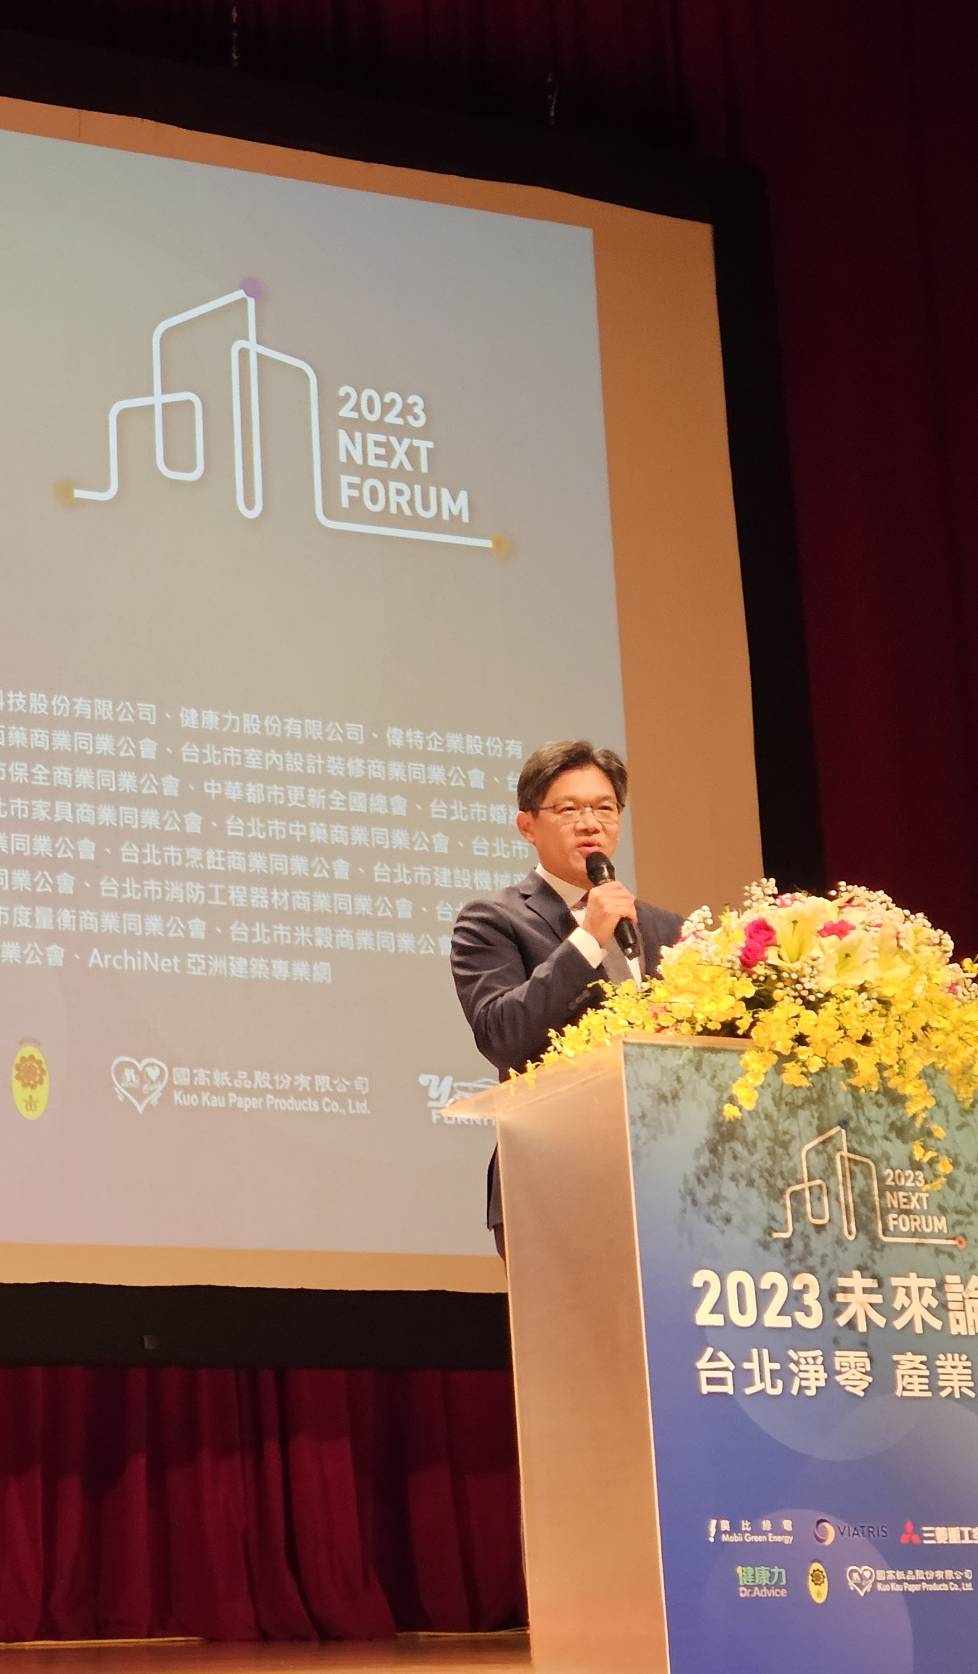 台 北 市 游 適 銘 副 秘 書 長 代 表 蔣 萬 安 市 長 出 席 致 詞 ， 表 達 台 北 永 續 共 融 與 希 望 首 都 的 願 景 